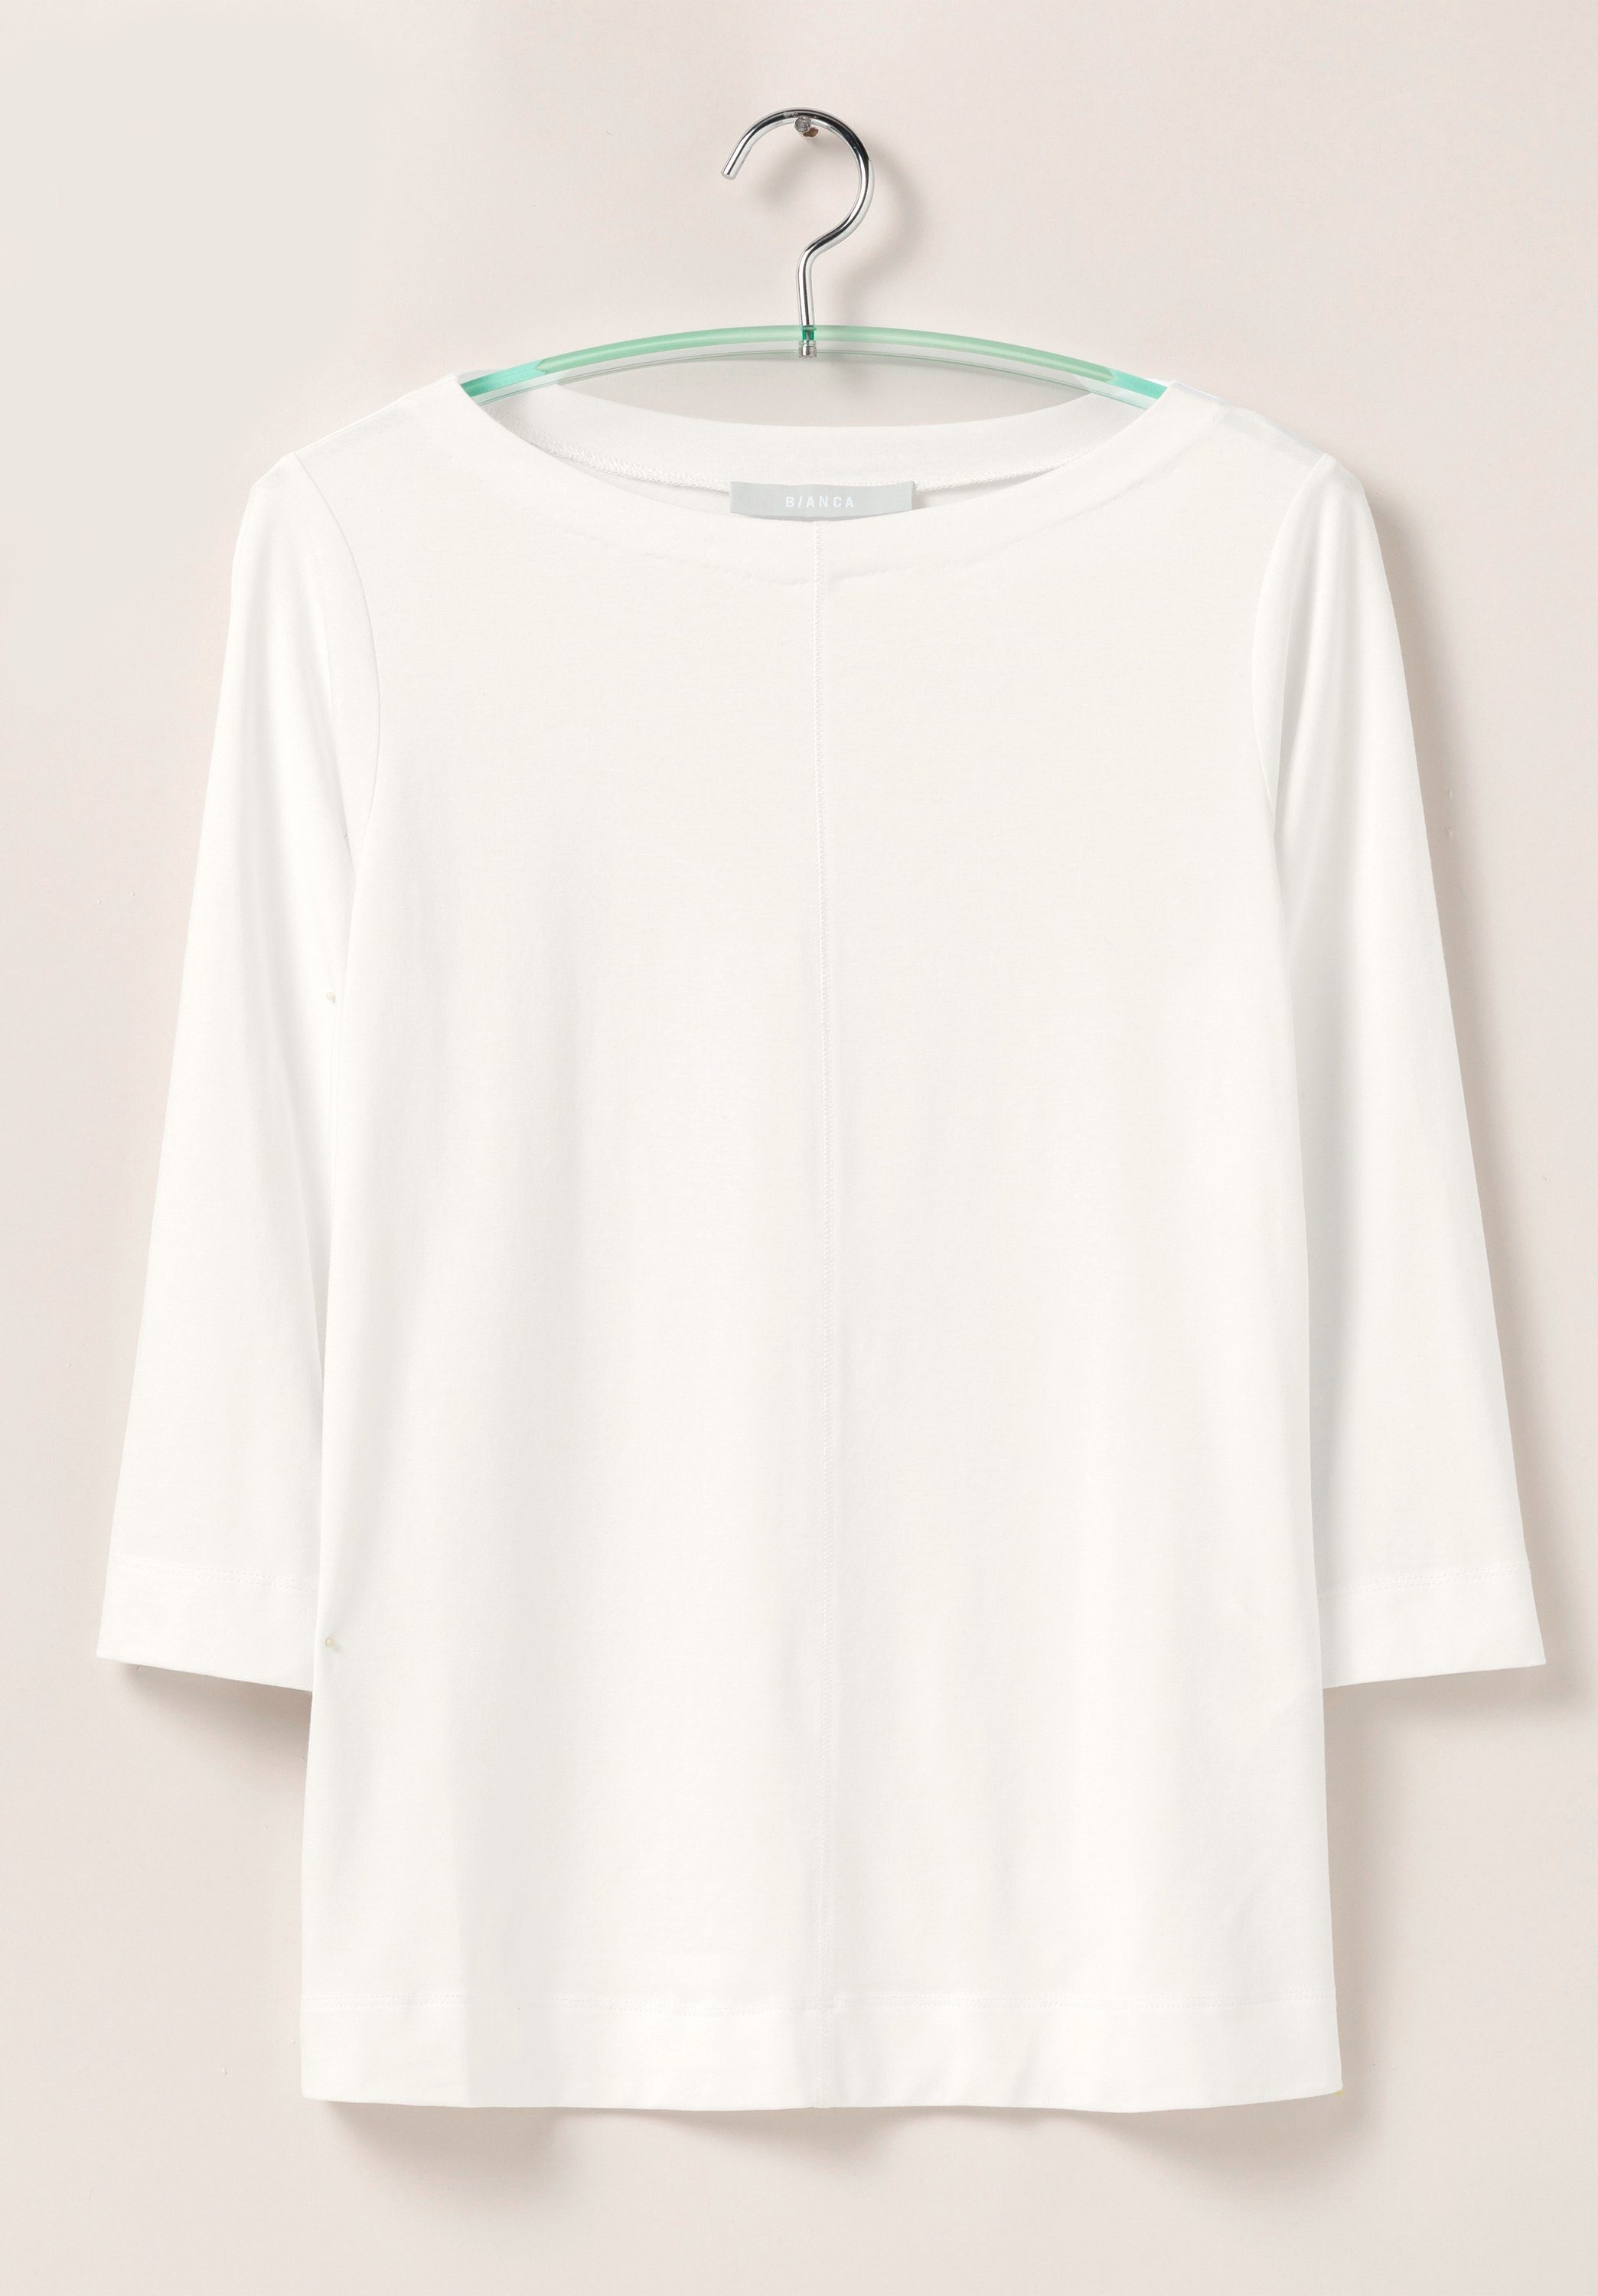 bianca Look DIELLA creme und Trendfarben modernem angesagten in 3/4-Arm-Shirt